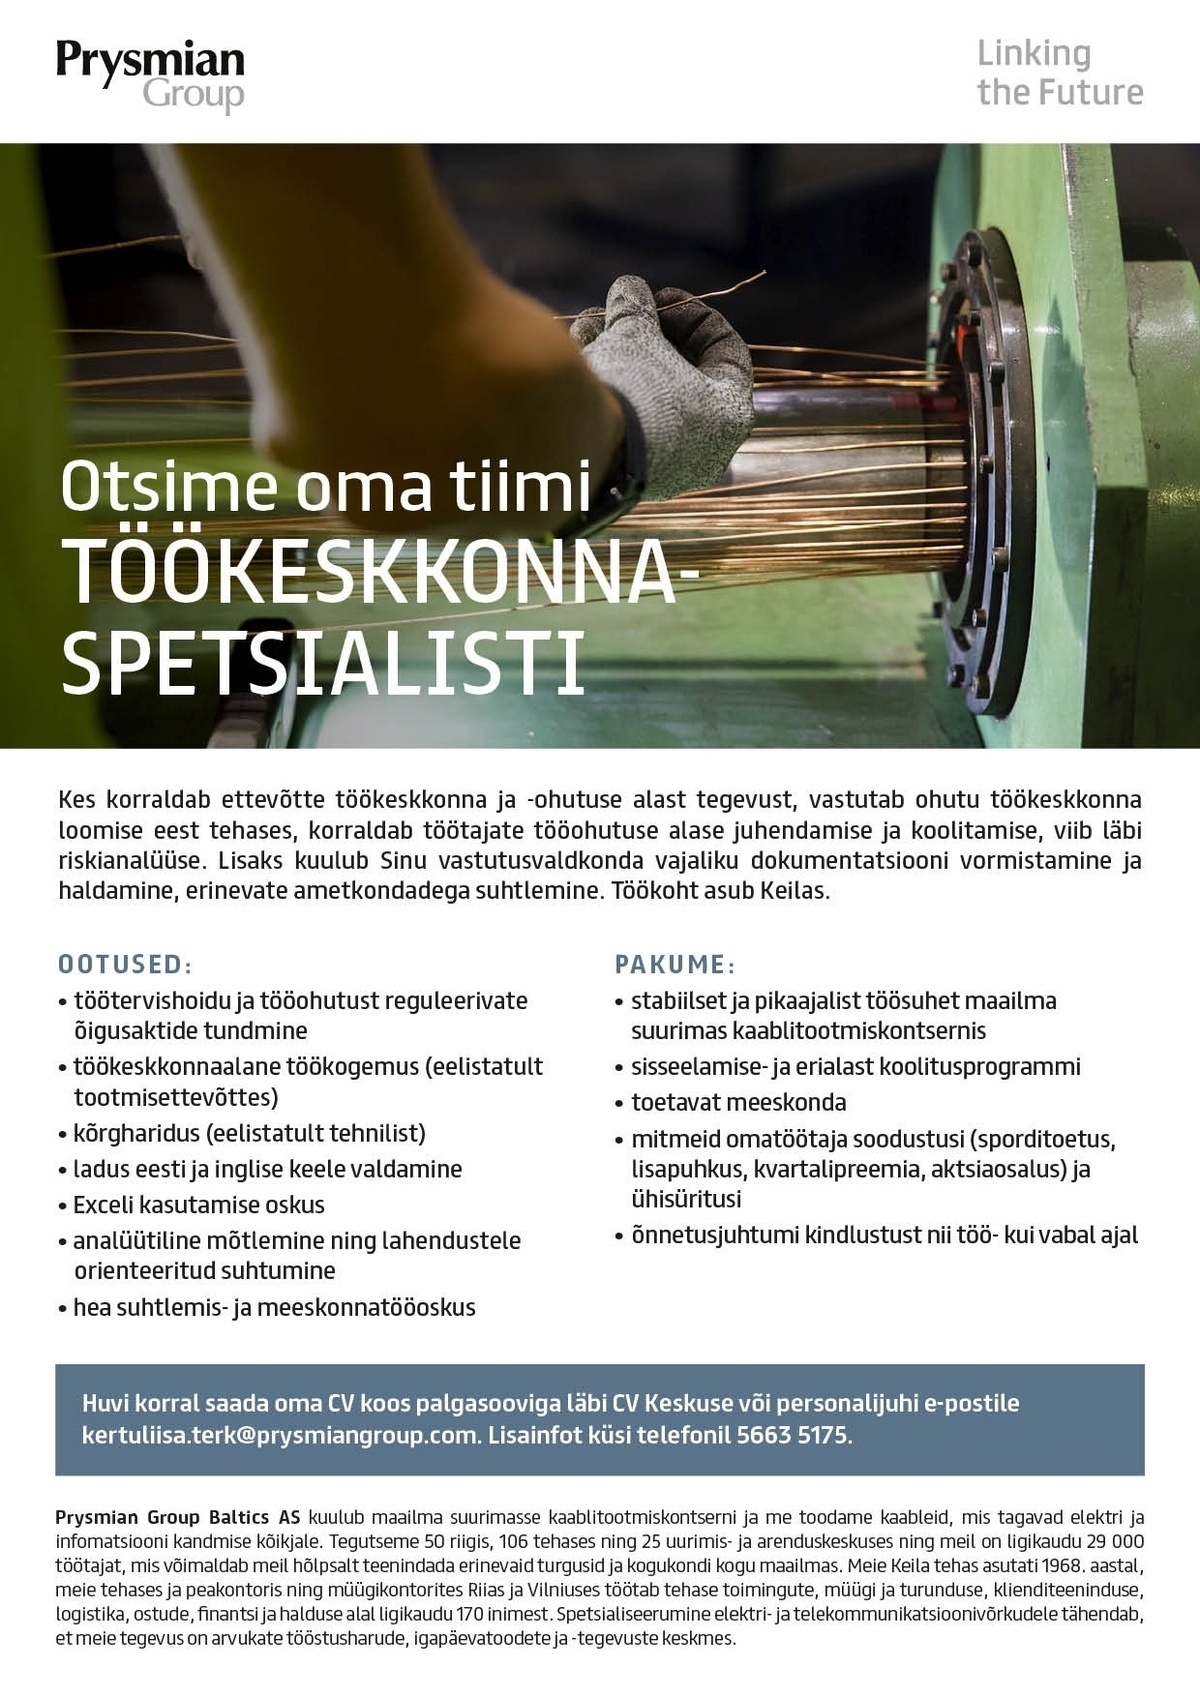 Prysmian Group Baltics AS Töökeskkonnaspetsialist